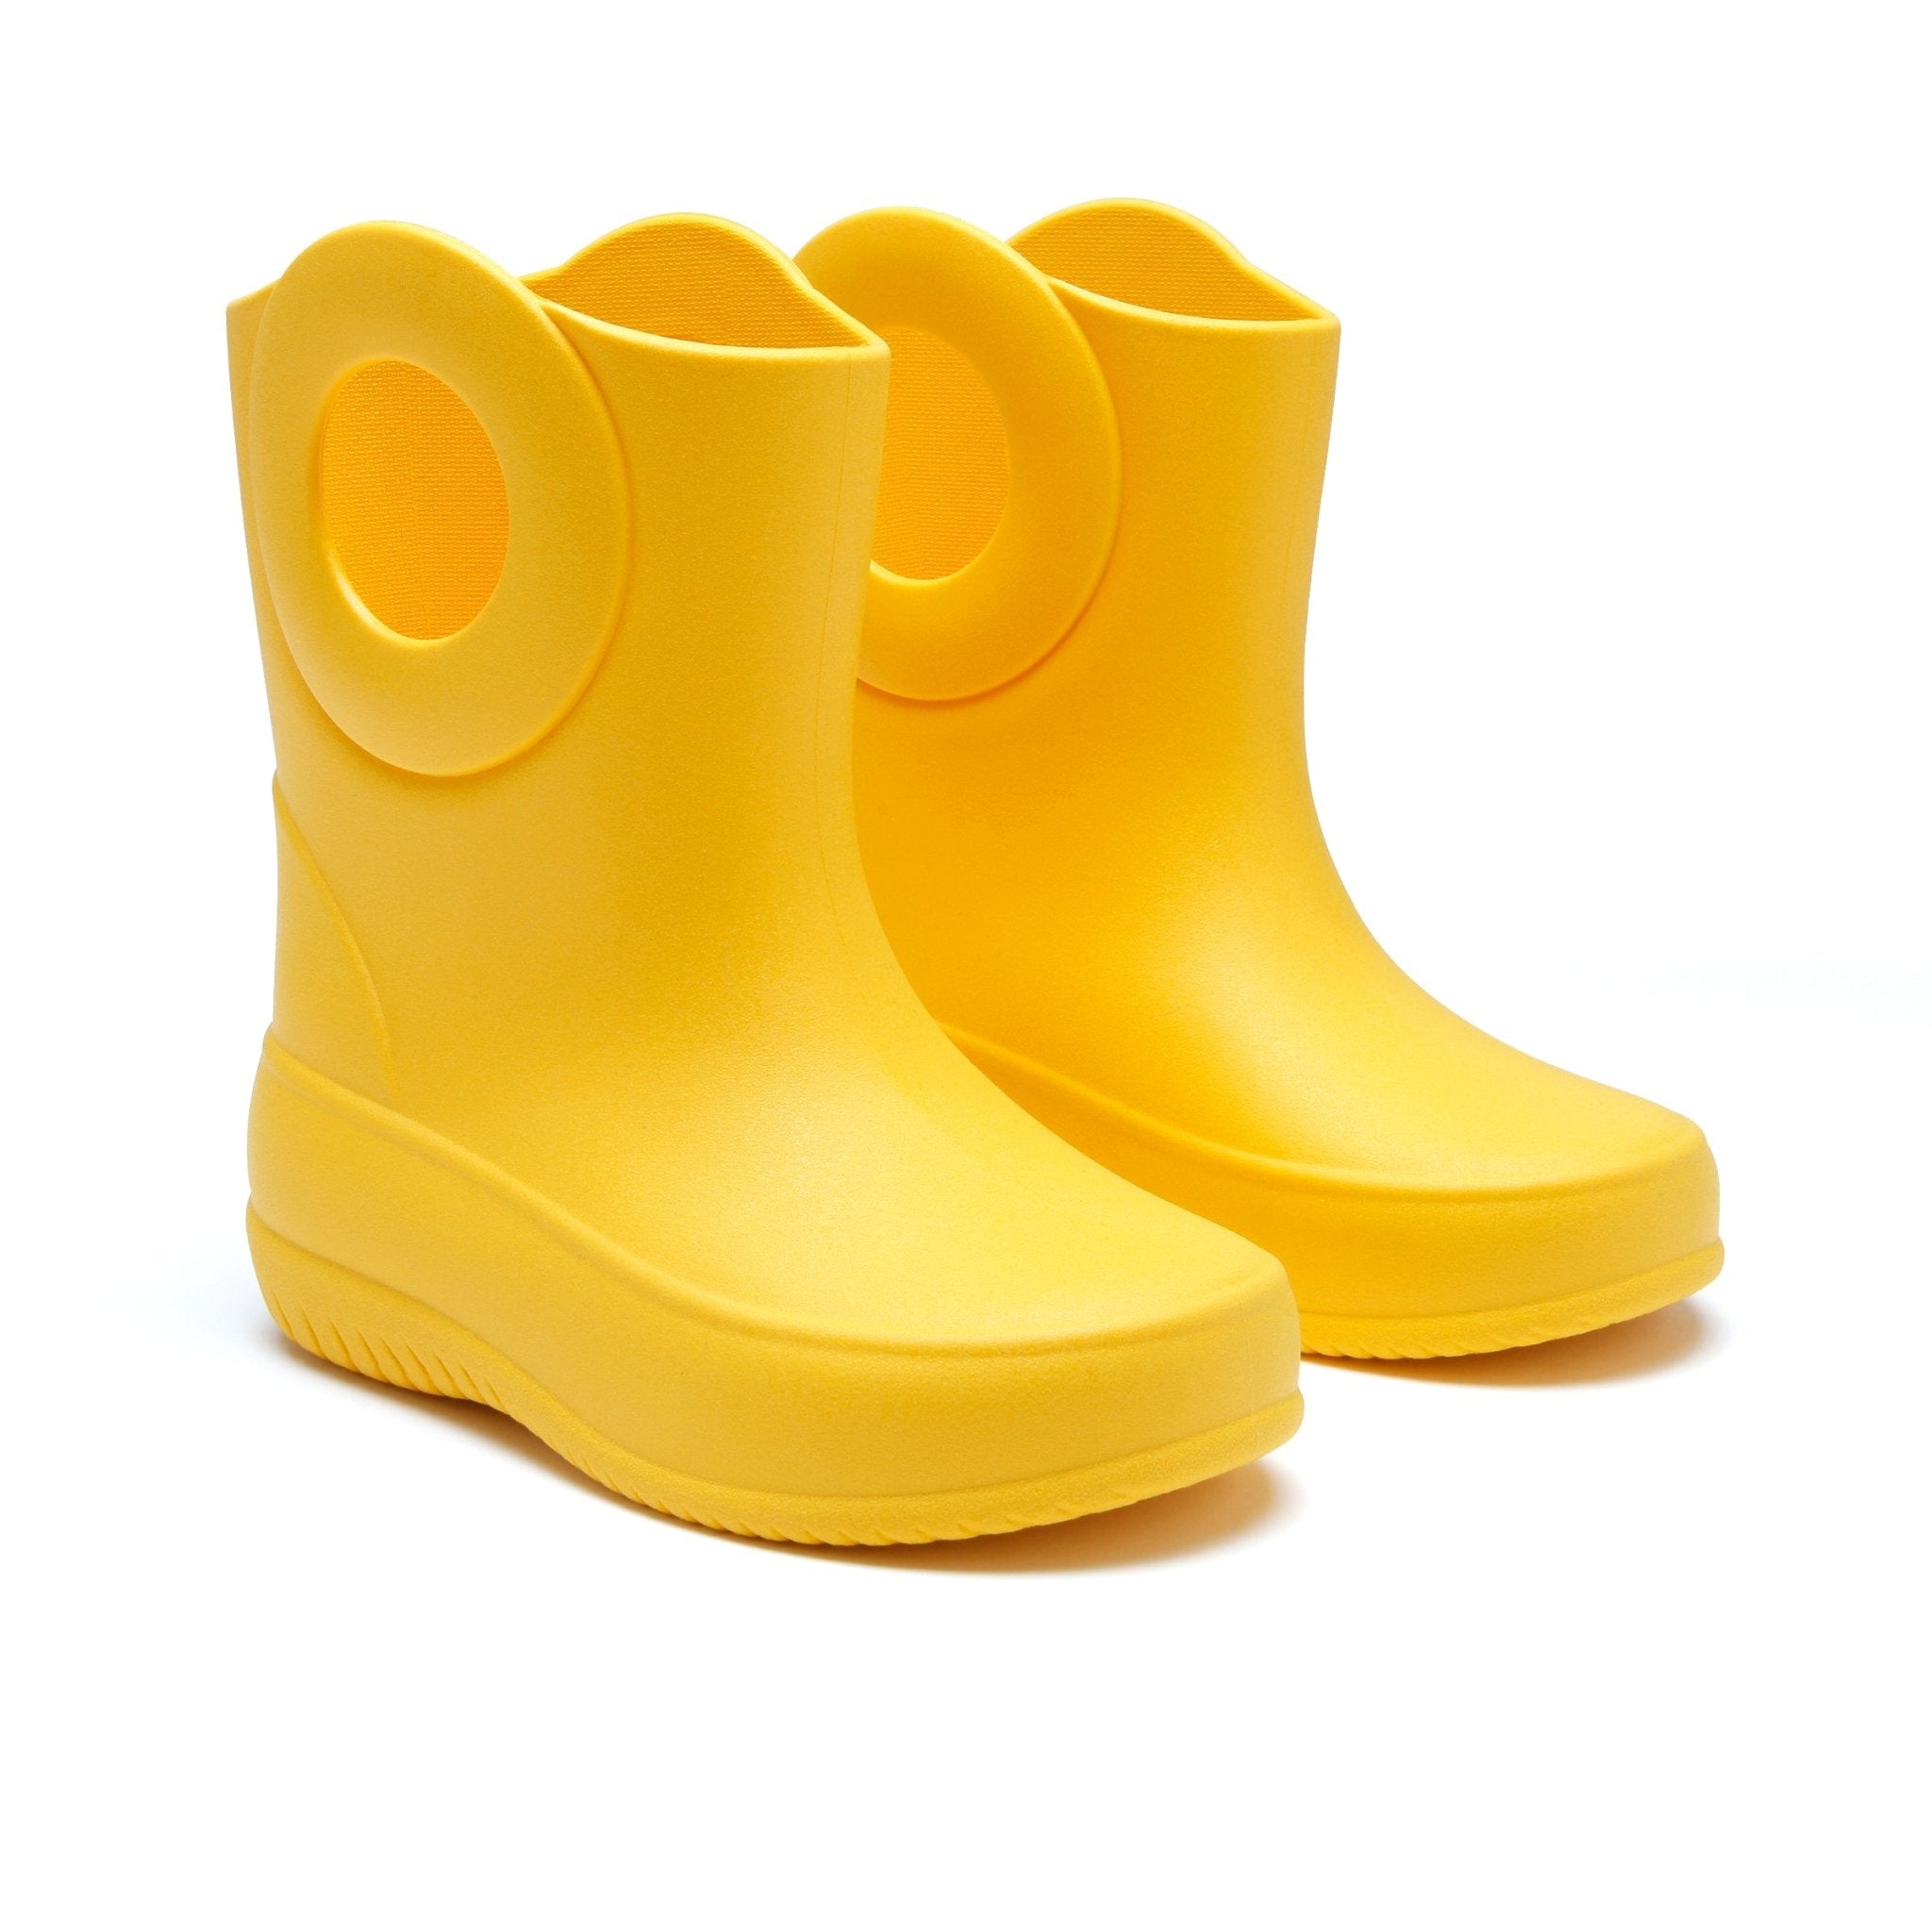 Crocs Kid Rain Boots | lupon.gov.ph